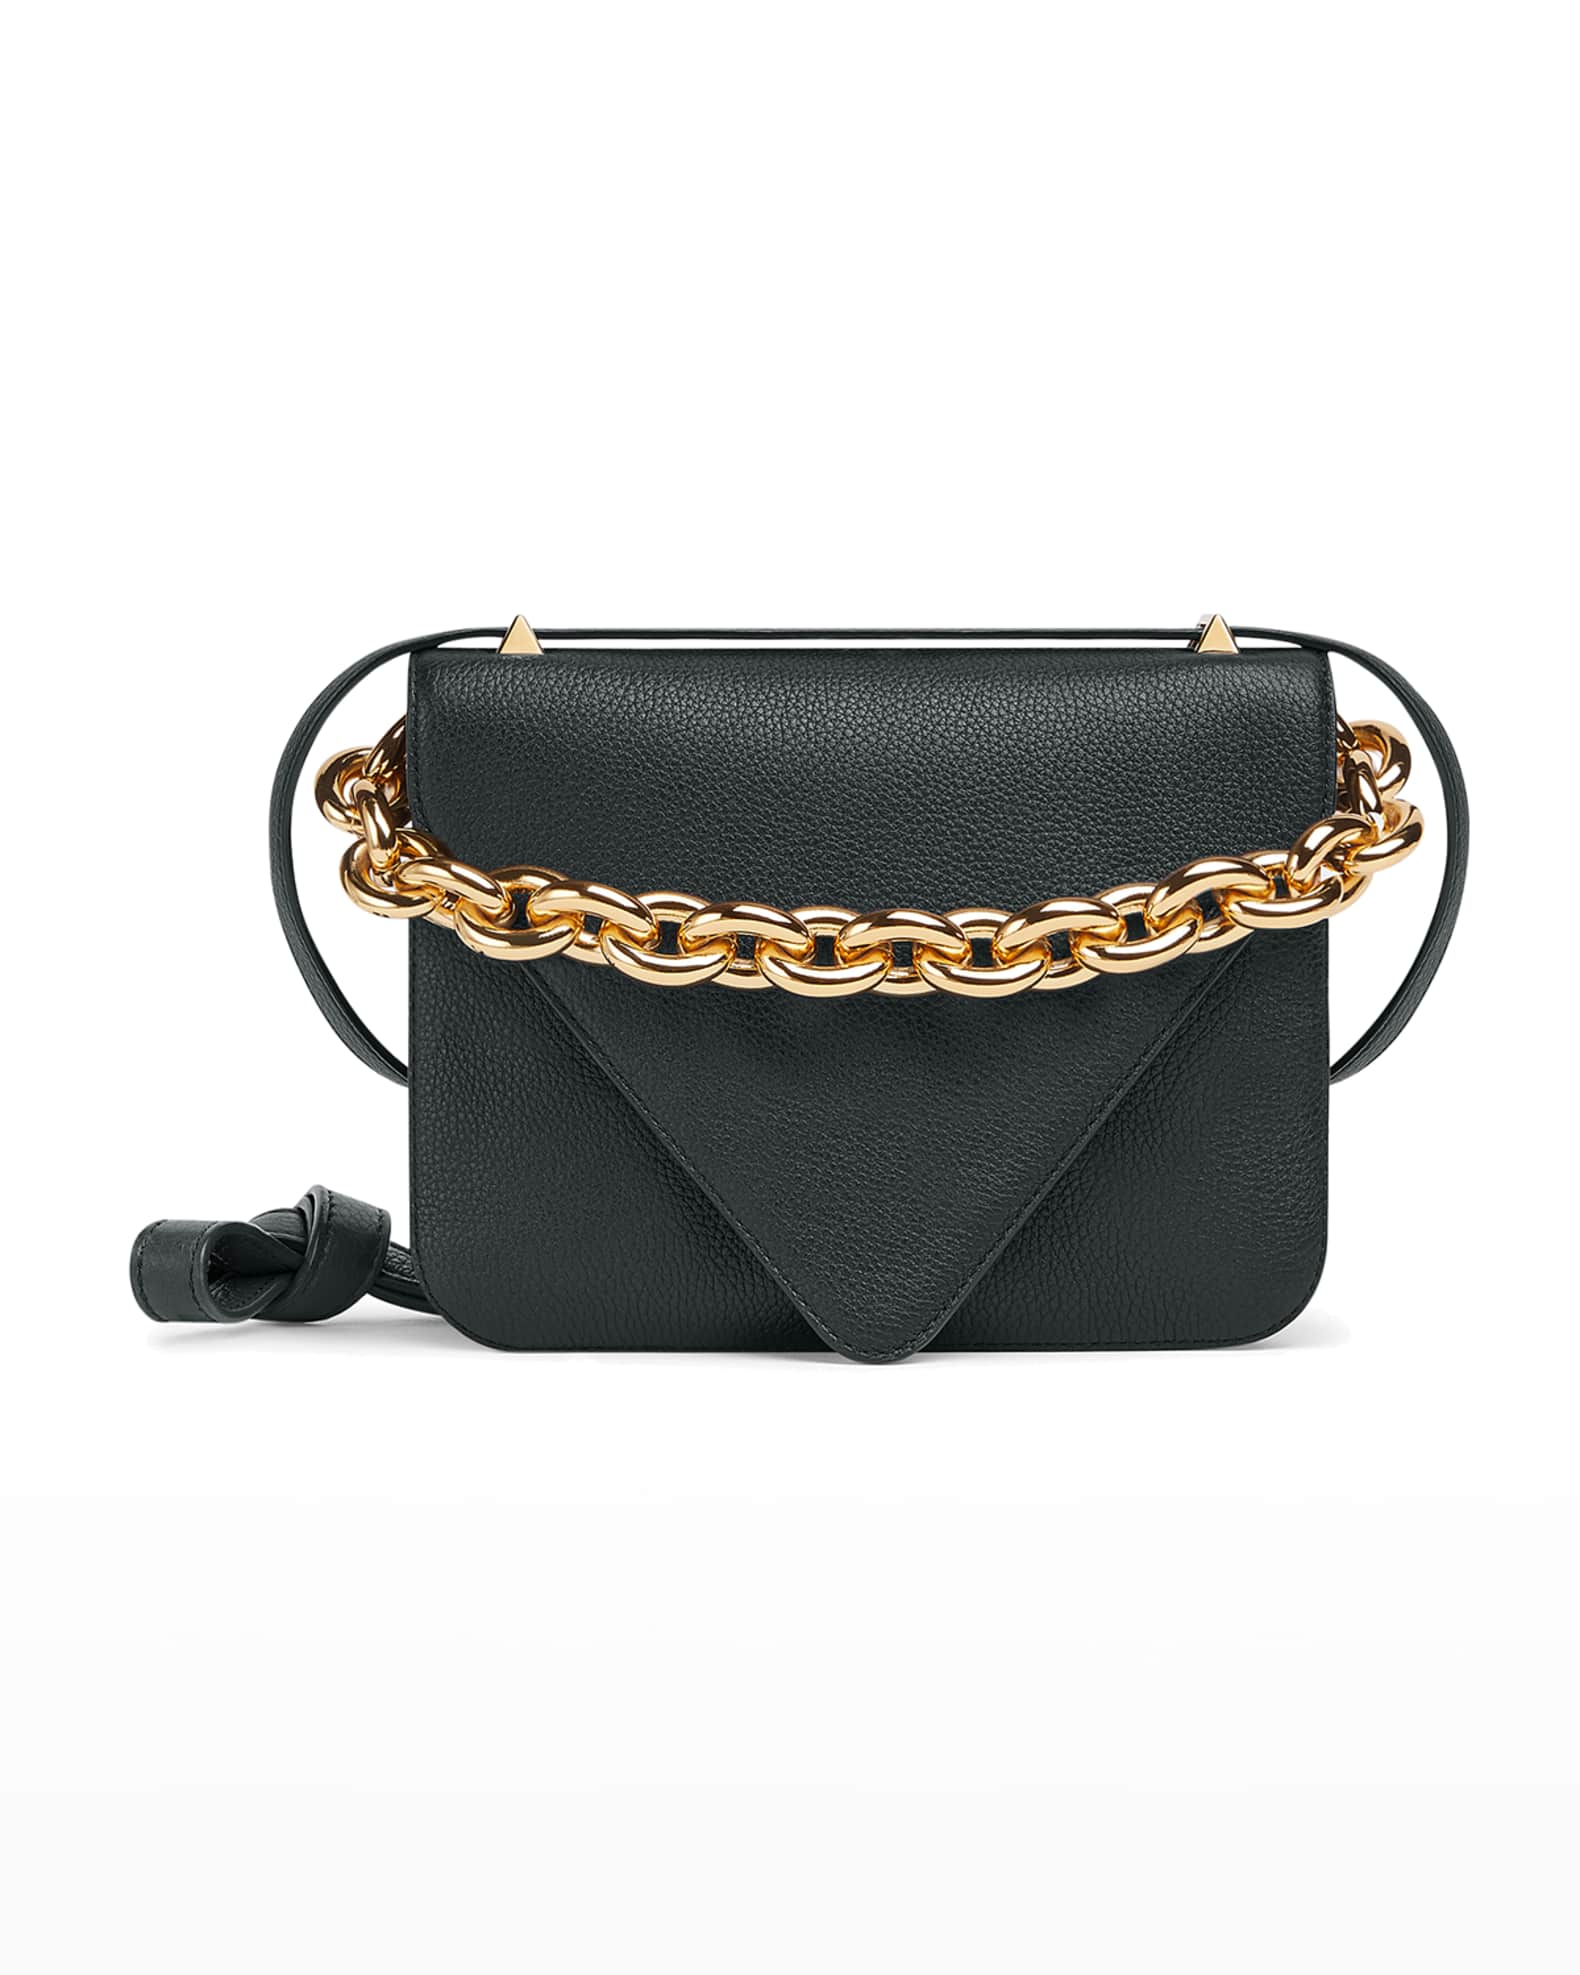 Bottega Veneta The Mount Envelope Shoulder Bag | Neiman Marcus